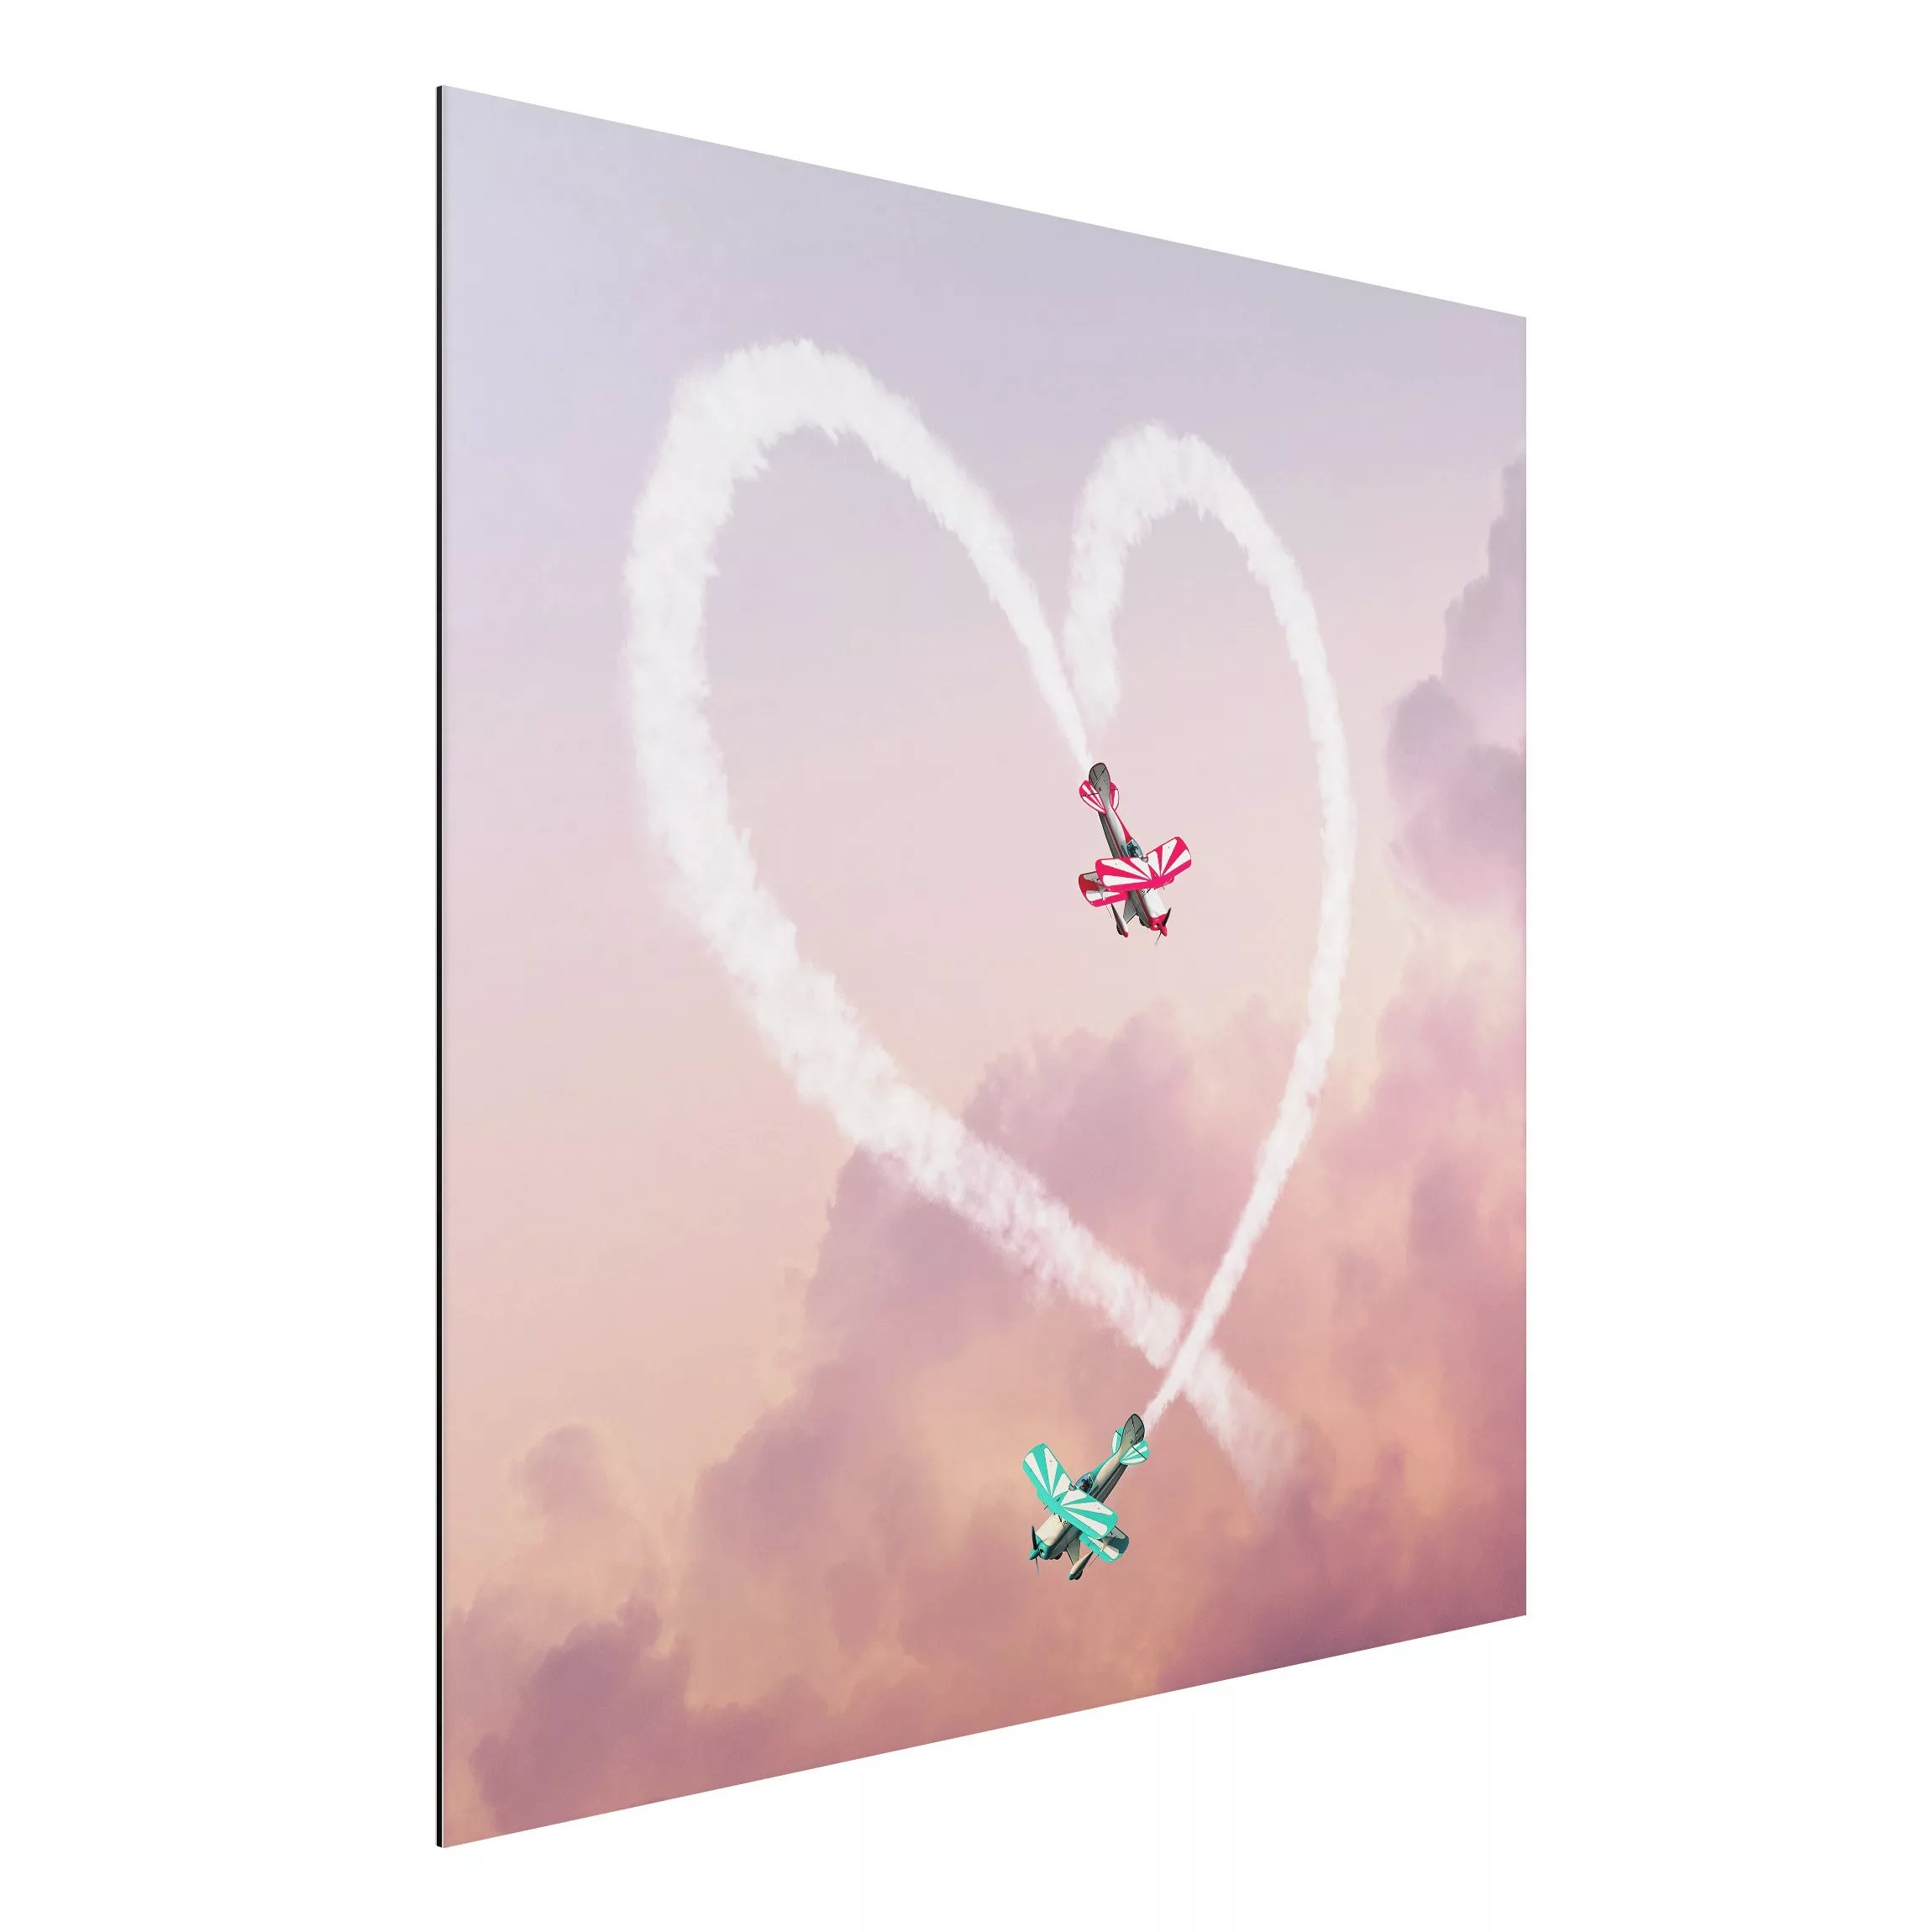 Alu-Dibond Bild Kunstdruck - Quadrat Herz mit Flugzeugen günstig online kaufen